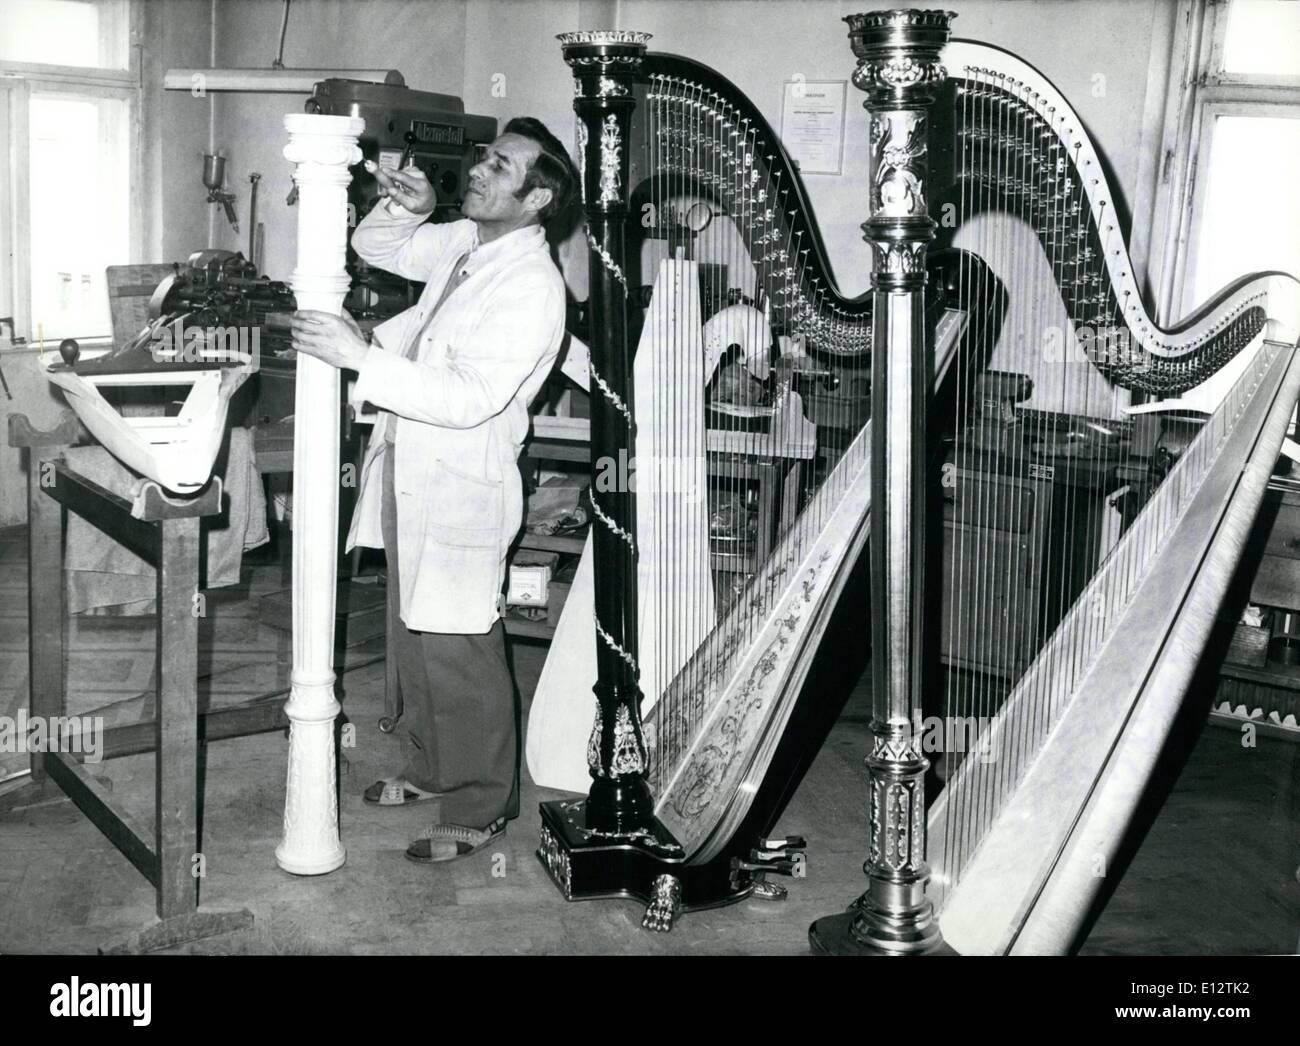 24. Februar 2012 - macht MAX HORNGACHER aus STARNBERG/UPPER BAVARIA HARFEN für OPERNHÄUSERN auf der ganzen Welt. Die Harfen, die von 49 Jahre alten MAX HORNGACHER aus Starnberg/obere Bayern gebaut werden sind sehr beliebt bei den Käufern auf der ganzen Welt. Nicht nur private Musiker, sondern auch die Harfe-Spieler von den großen Orchestern der Welt schätzen die empfindliche Instrumente, die He macht süß-Harfe Töne aus den Horngacher-Instrumenten in Bayreuth, an der Oper von Tokio, der Scala Milano, sowie der Metropolitan Opera New York gehört werden kann Stockfoto